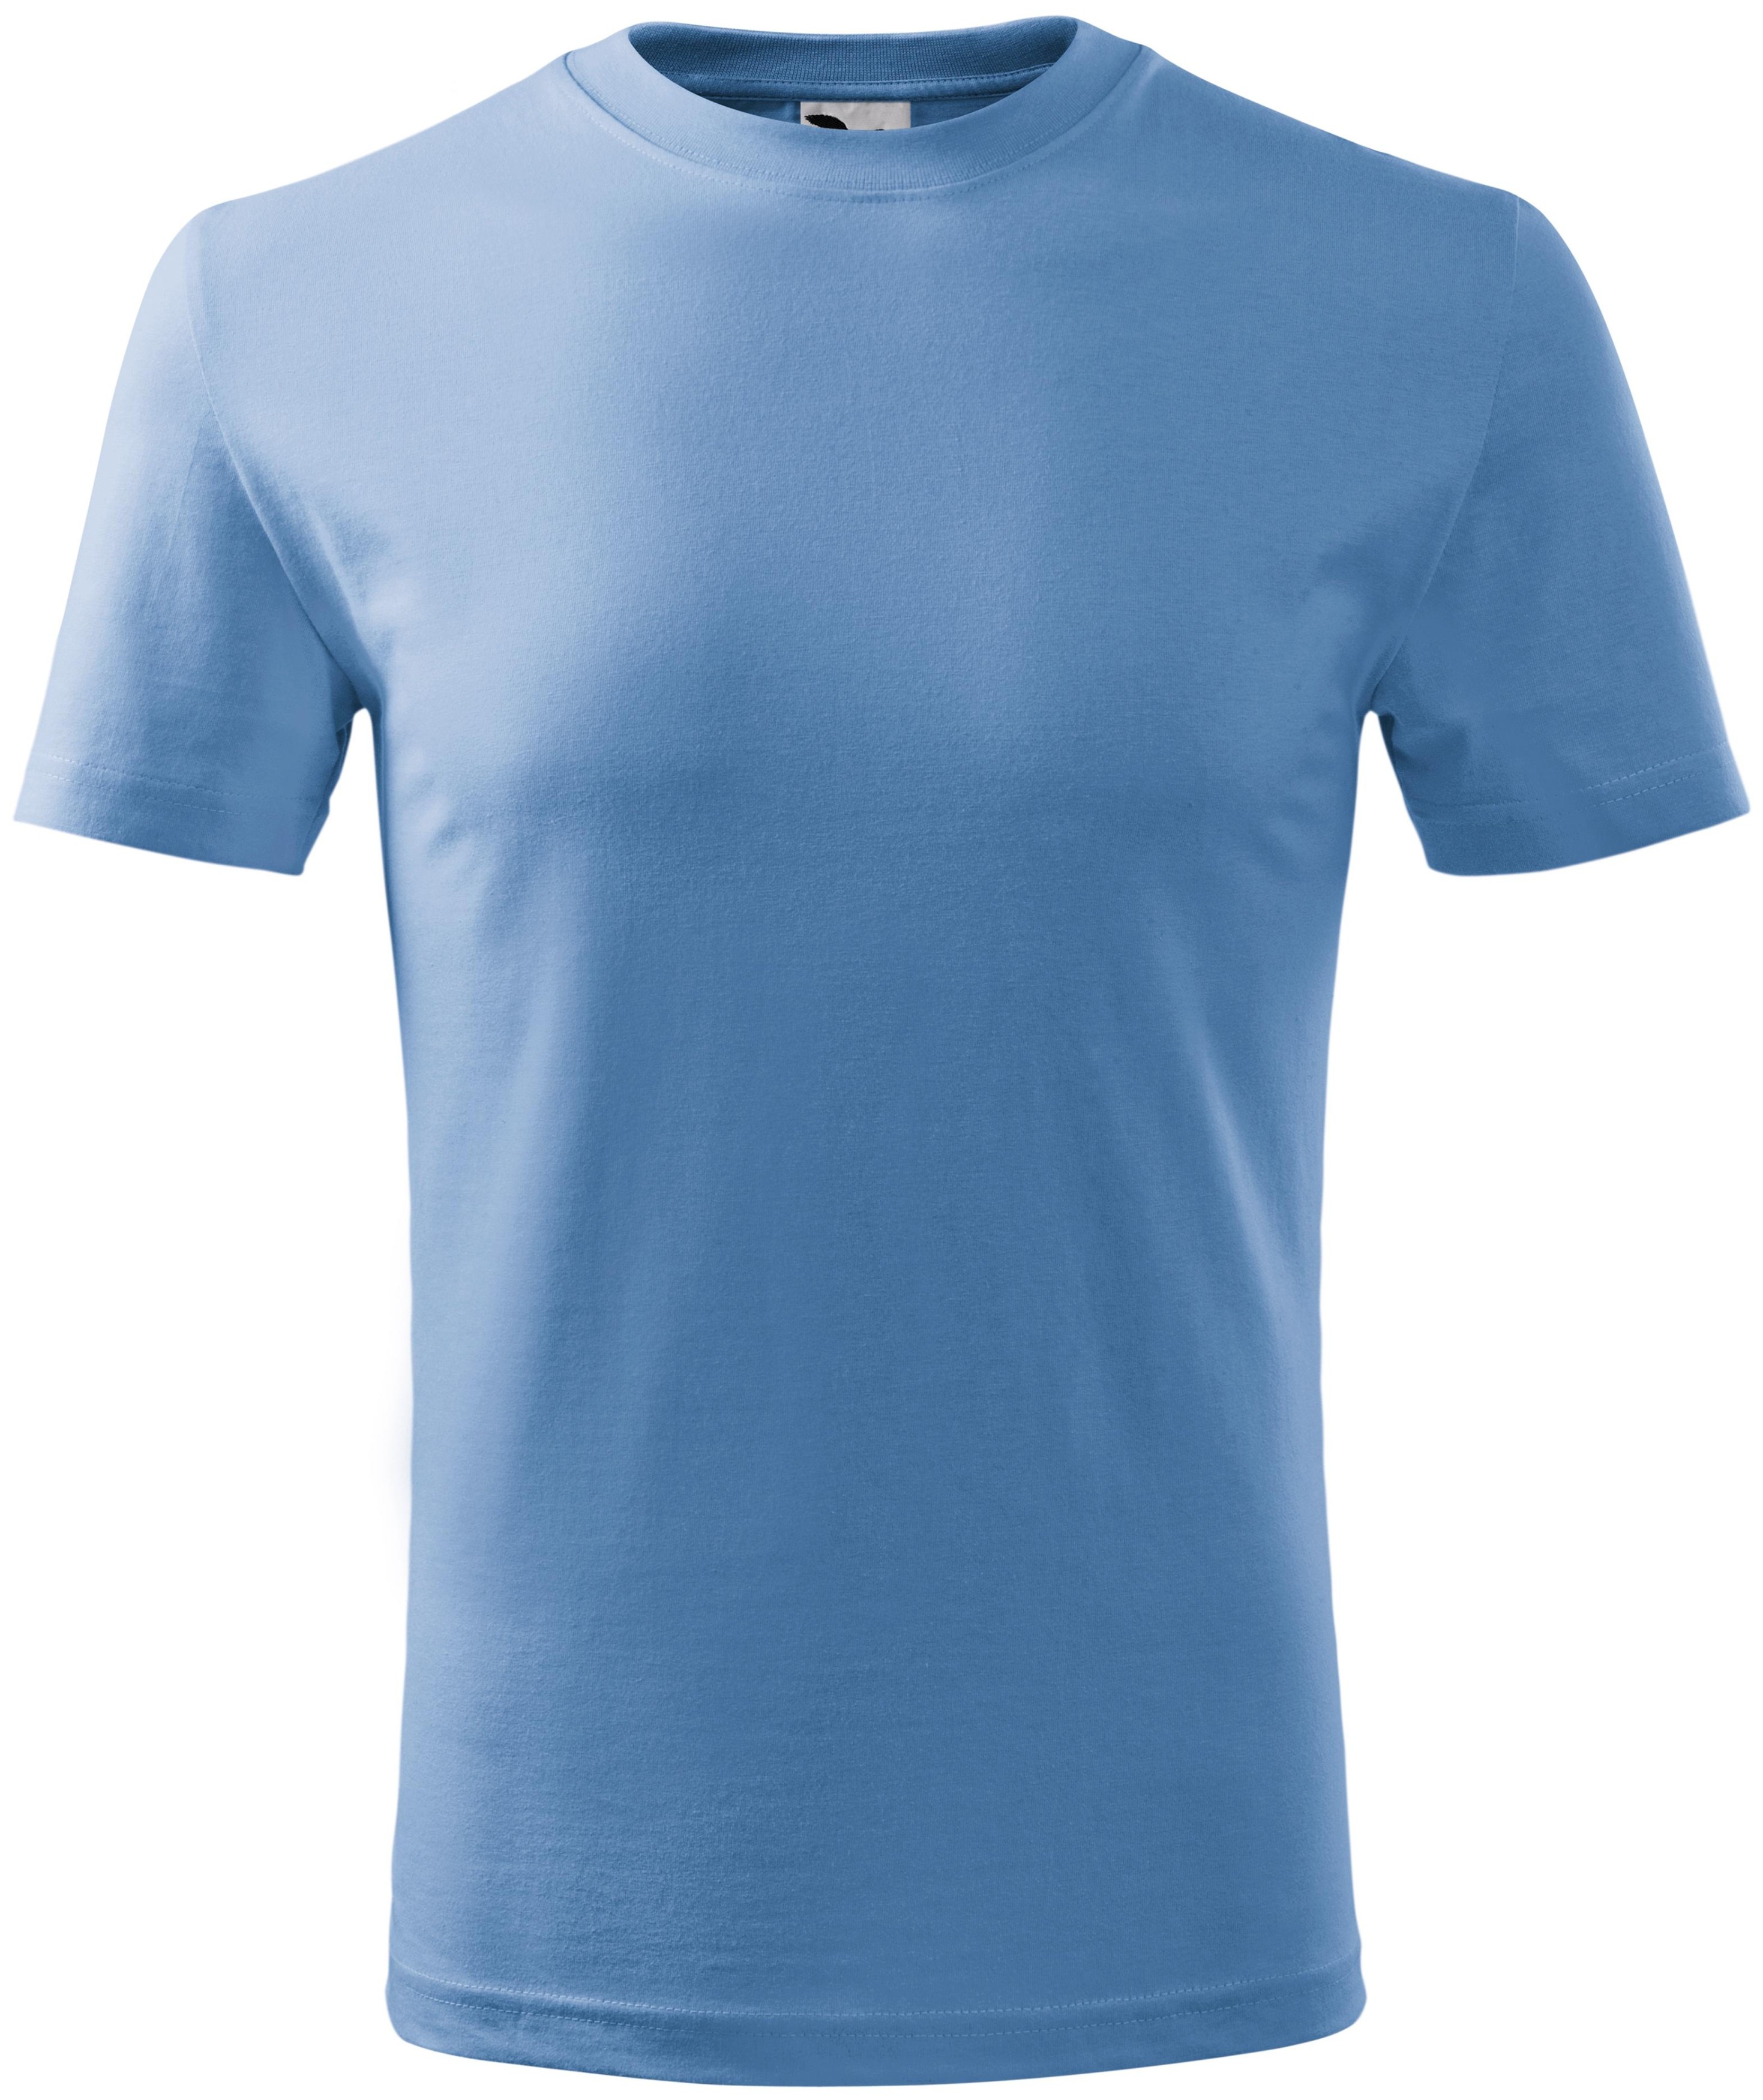 Παιδικό ελαφρύ μπλουζάκι, γαλάζιο του ουρανού, 146εκ / 10 χρόνια